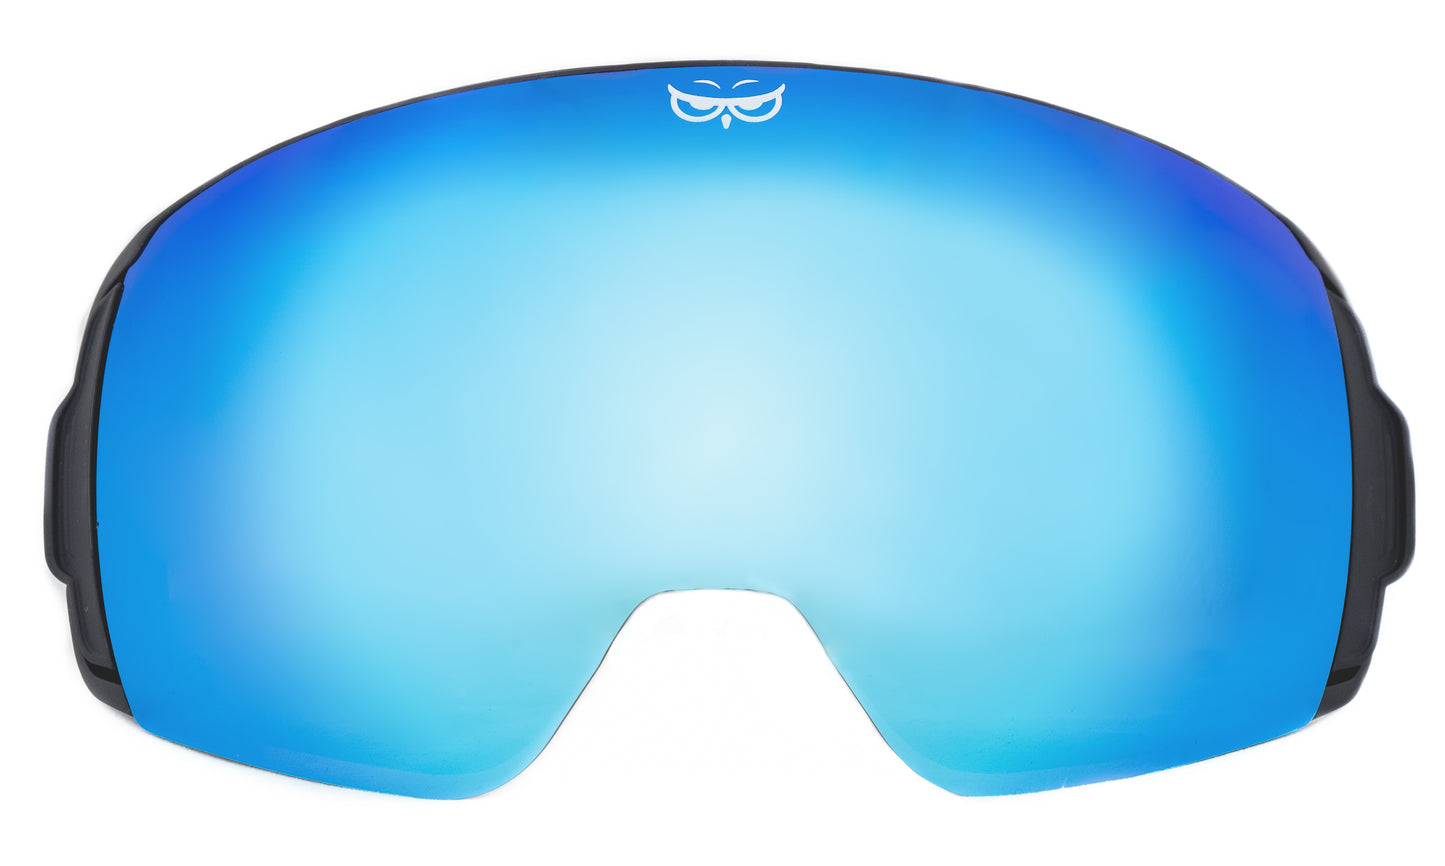 Gnarly Owl ice blue polarizační zrcadlový modrý zorník sova česká značka výrobce lyžařské snowboardové brýle